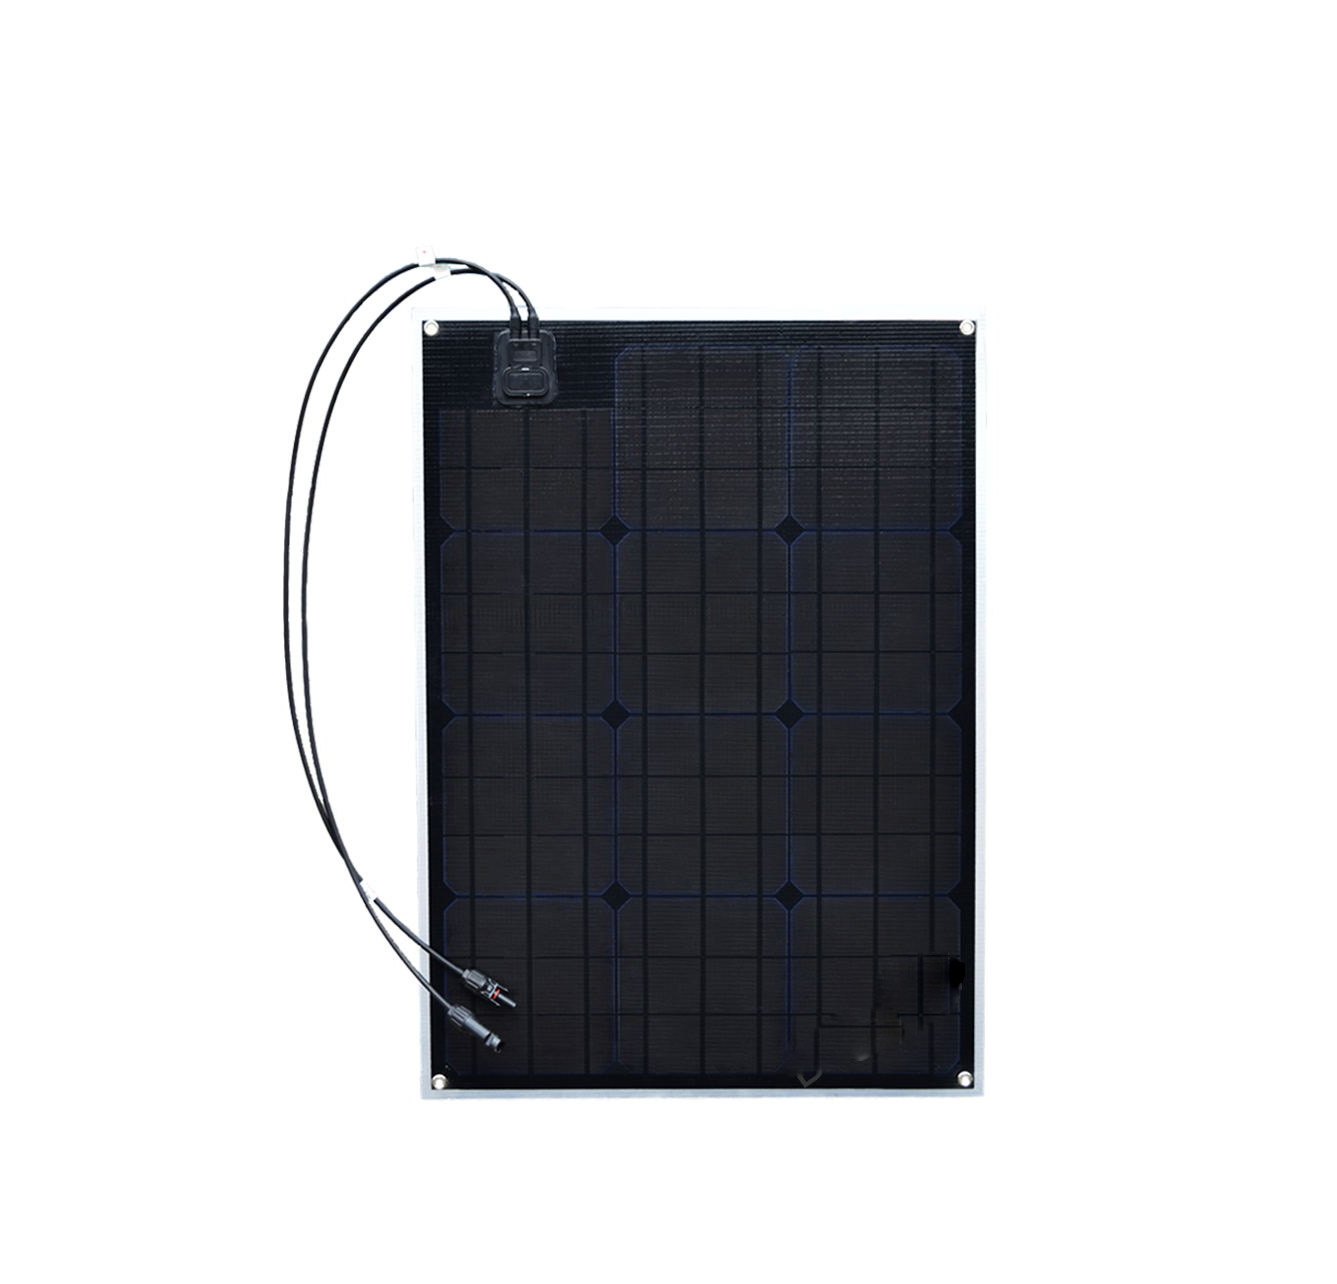 50W 17.5V Monocrystalline Flexible Solar Panel Battery Charger